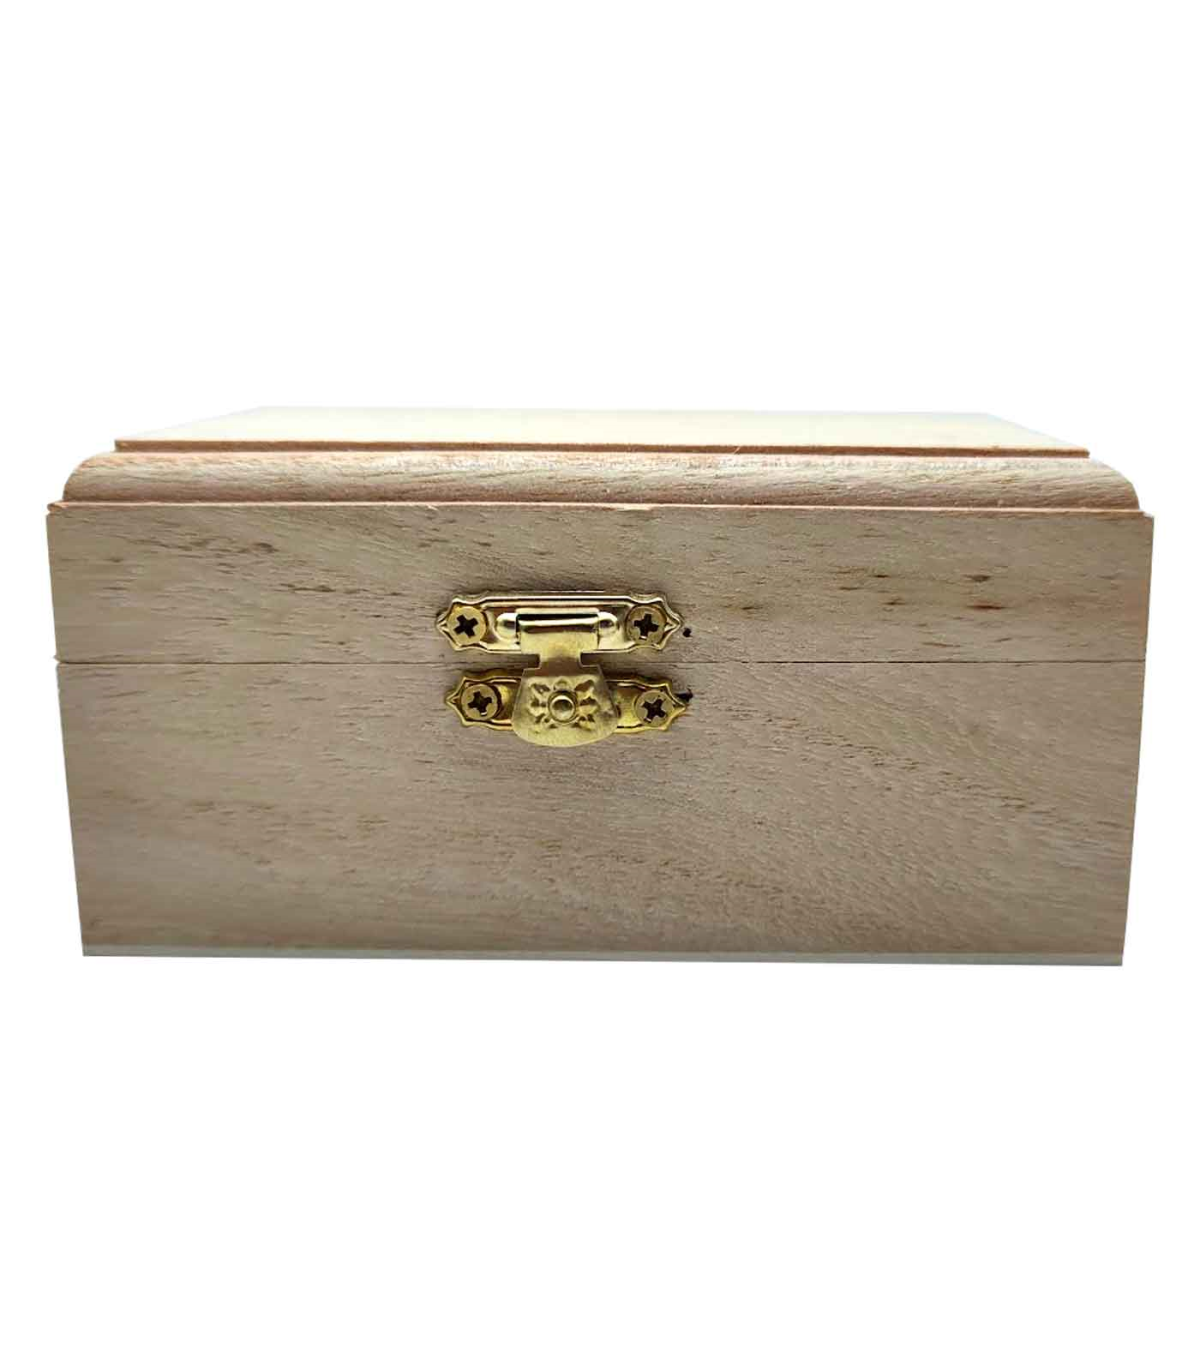 Cajas Pequeñas, Cajas para Envío Pequeñas, Small Cube Boxes en